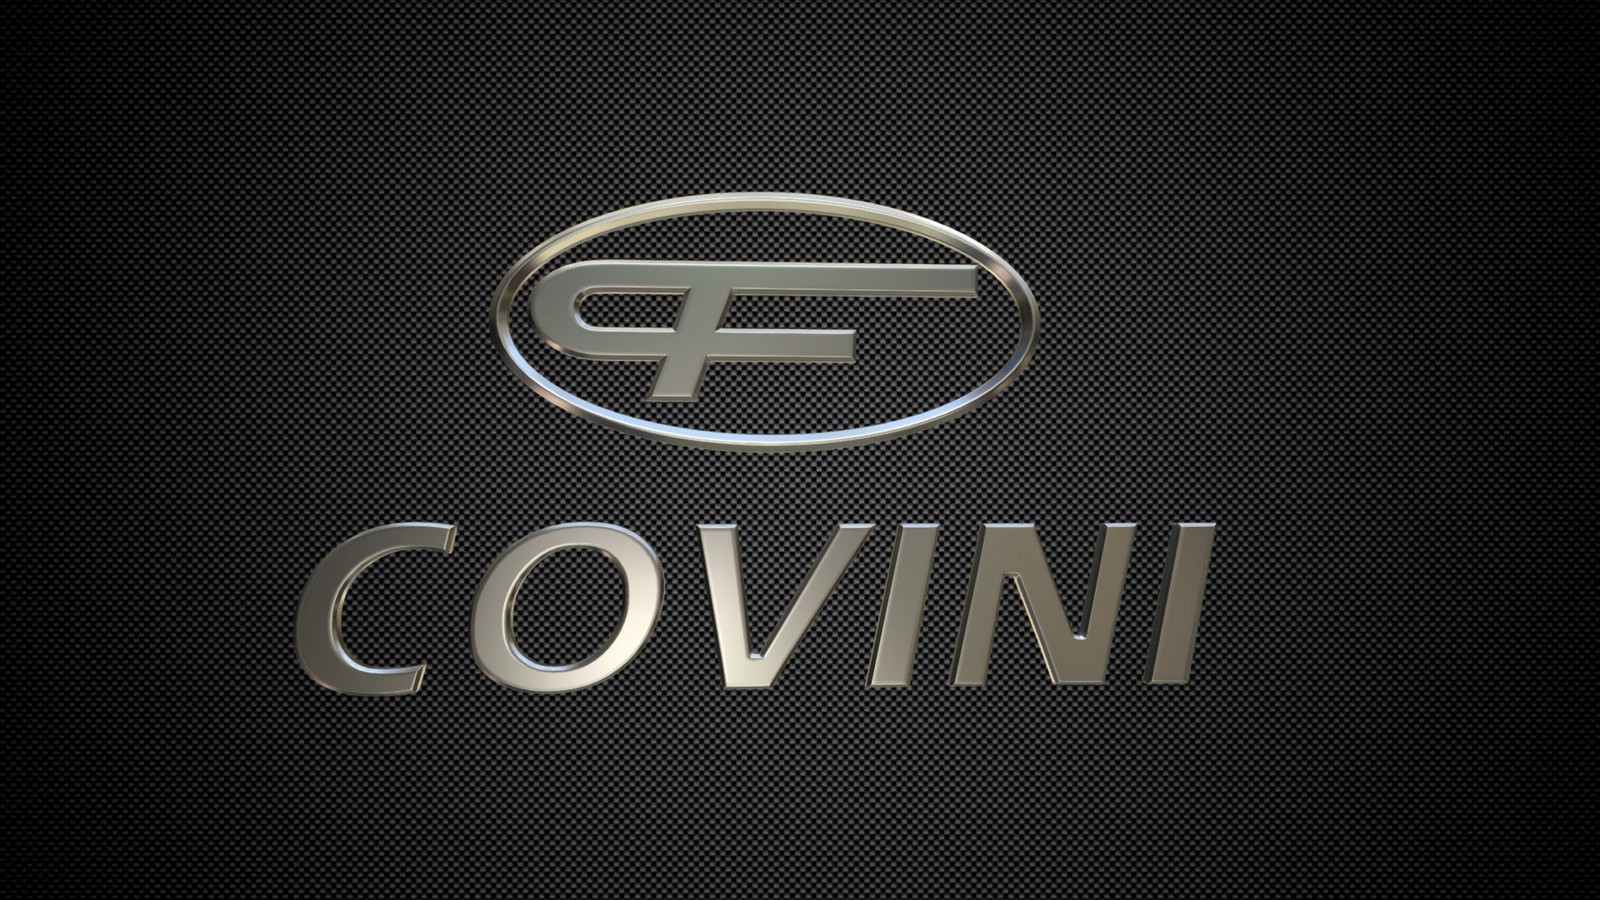 Covini Constructeur Automobile Italien crée en 1978